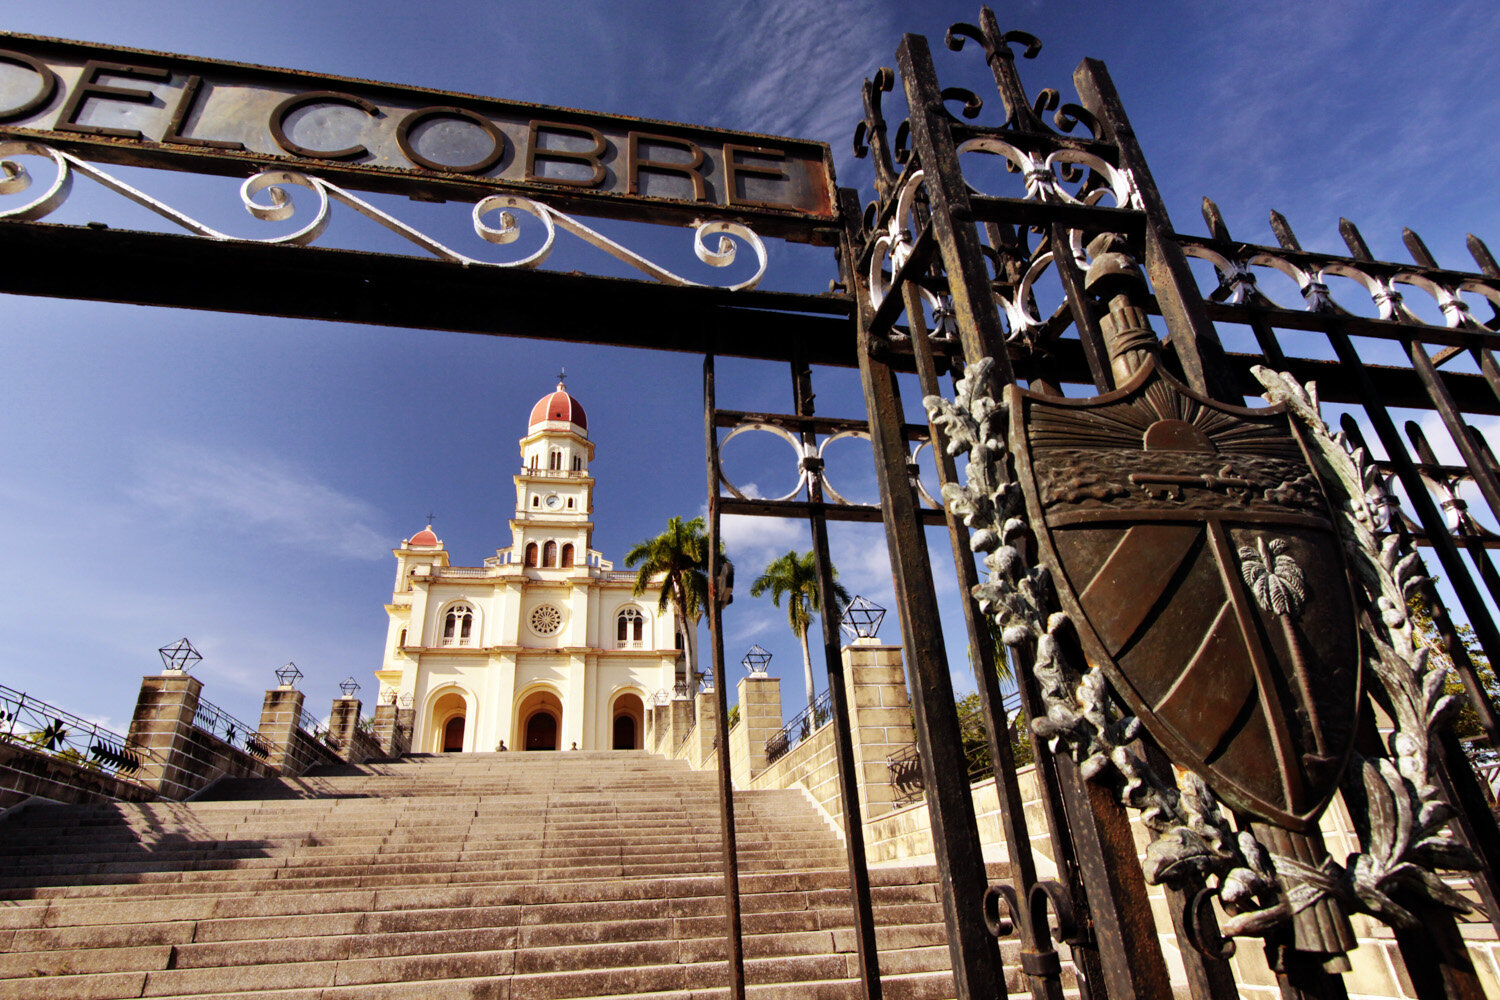  Cobre church, near Santiago de Cuba, home to the national saint, 2008                     